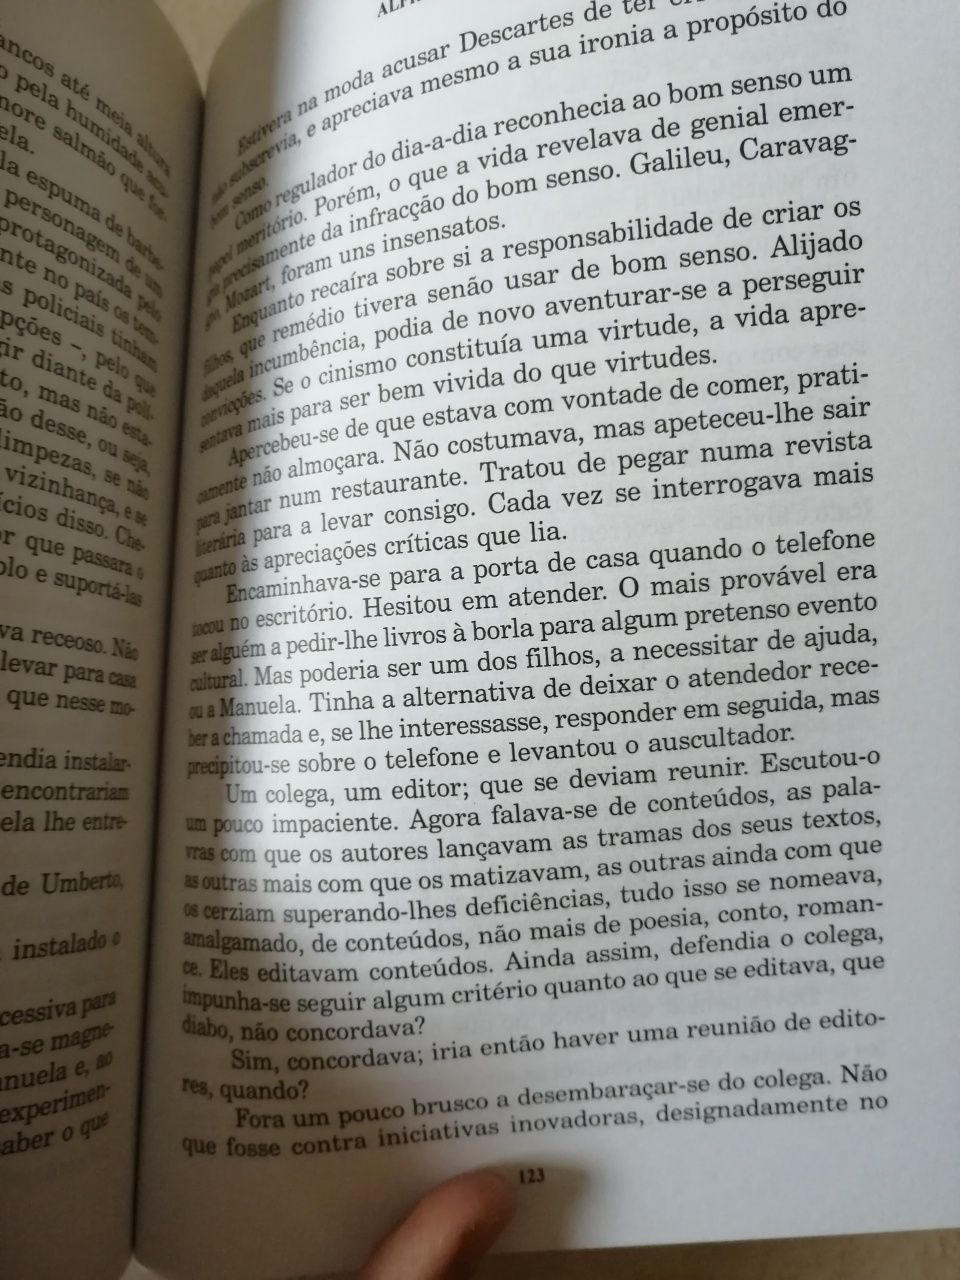 Livros Sérgio de Sousa - "Trilha Encoberta" e "Algumas Mulheres"